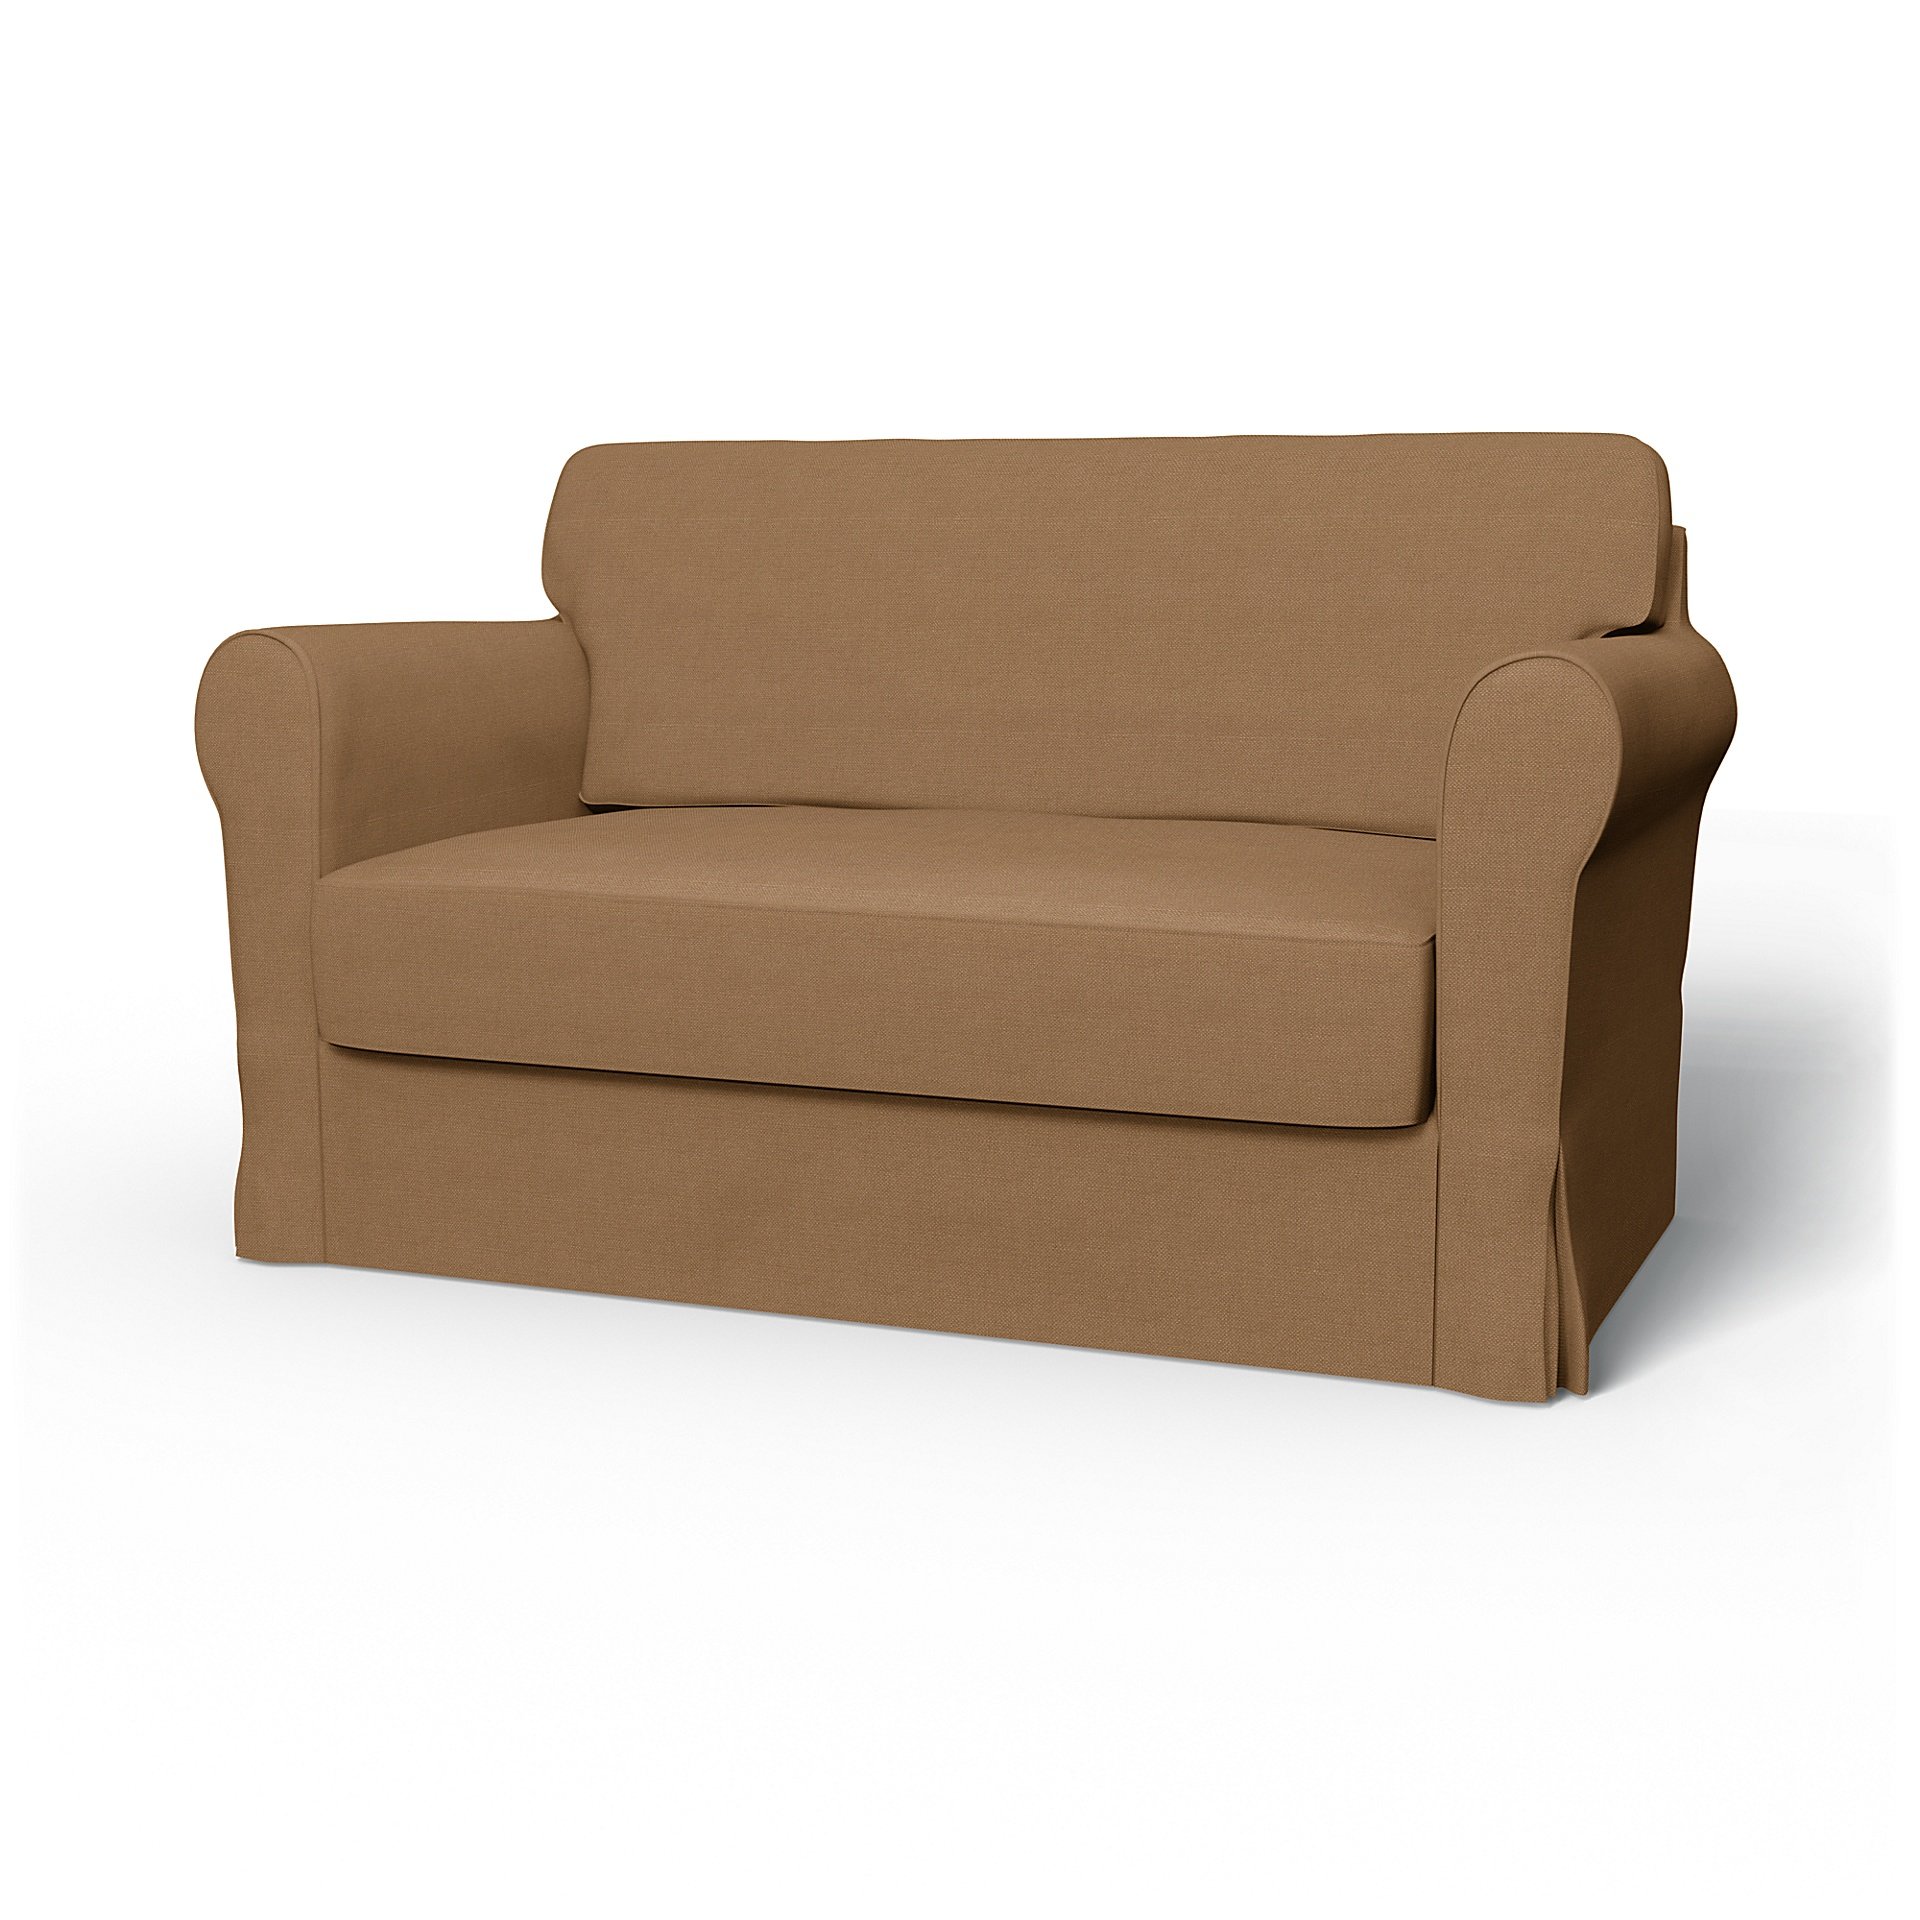 Fundas para sofás cama Hagalund de IKEA descatalogados - Bemz | Bemz